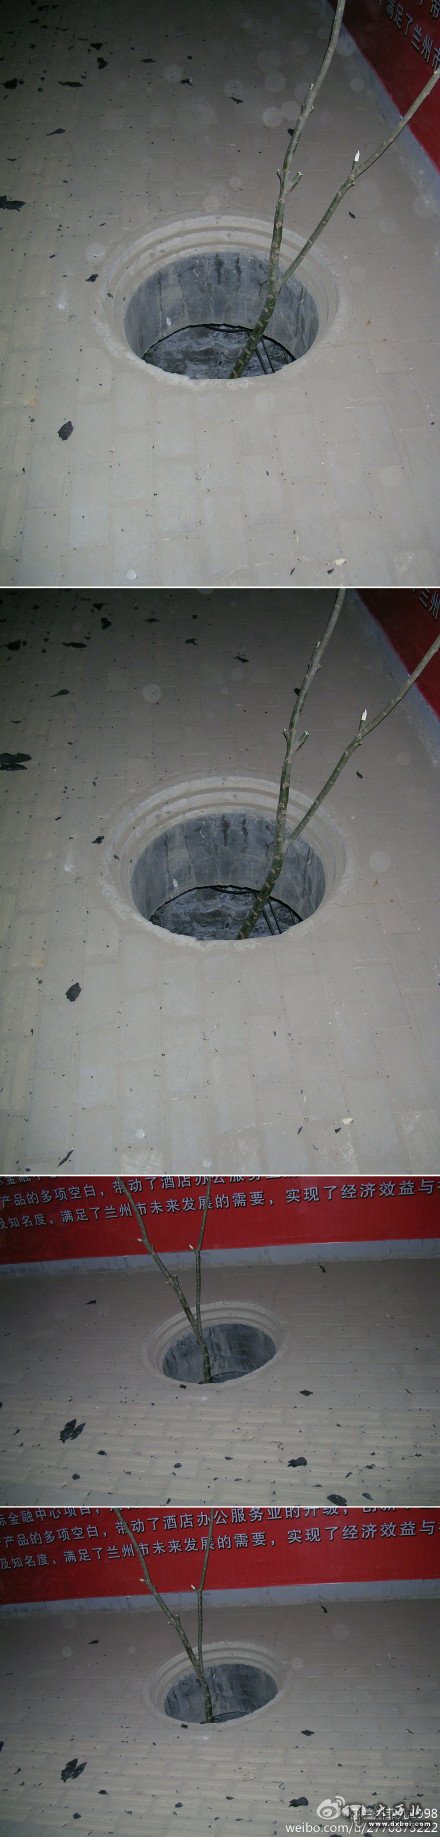 滨河北路盲道上的一个下水井